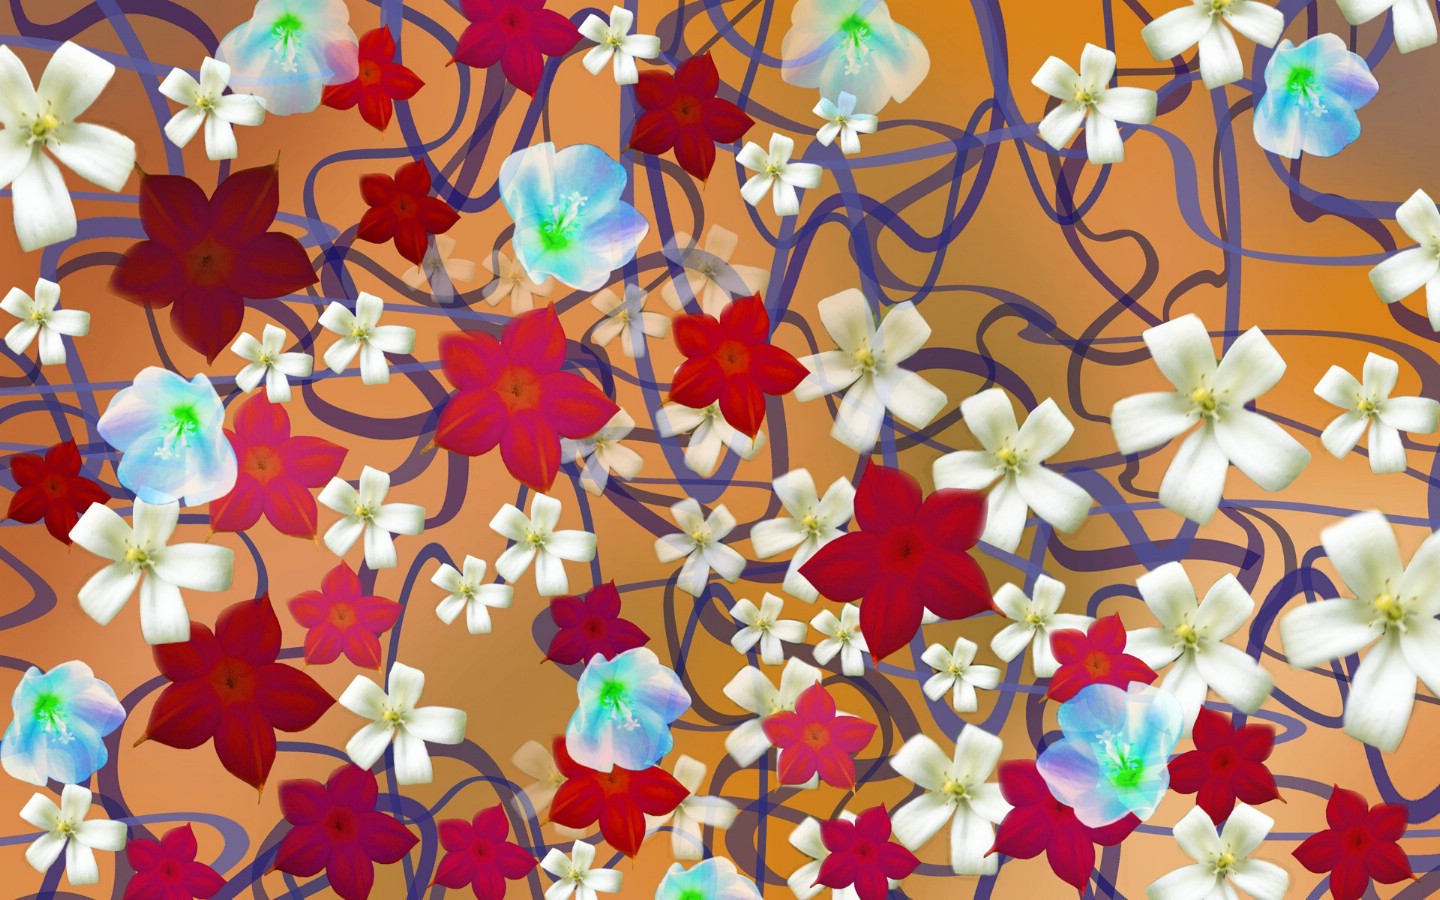 壁纸1440x900 CG花卉插画壁纸壁纸 数码合成花卉插画壁纸 数码合成花卉插画图片 数码合成花卉插画素材 花卉壁纸 花卉图库 花卉图片素材桌面壁纸